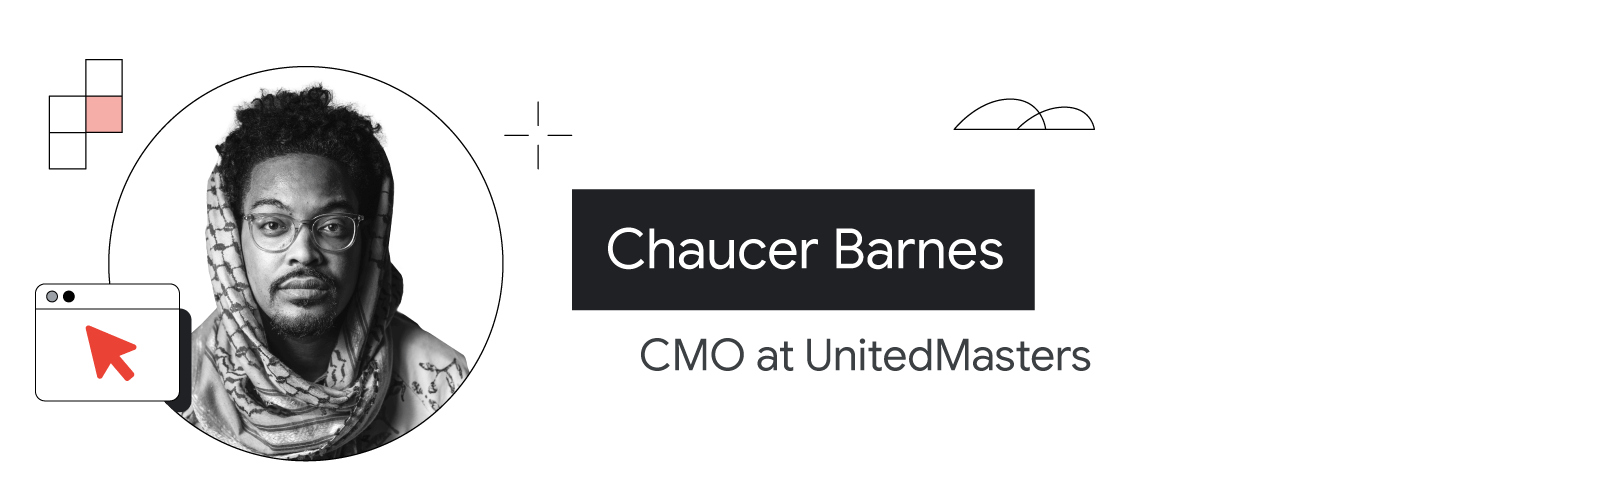 UnitedMasters'ın CMO'su Chaucer Barnes'ın, omuzlarından yukarısı görünecek şekilde fotoğrafına yer verilmiştir. Koyu tenli ve sakallıdır. Orta uzunlukta ve siyah saçlarının bir kısmı fularla örtülüdür. Gözlük takıyor ve dekoratif süslere sahip bir gömlek